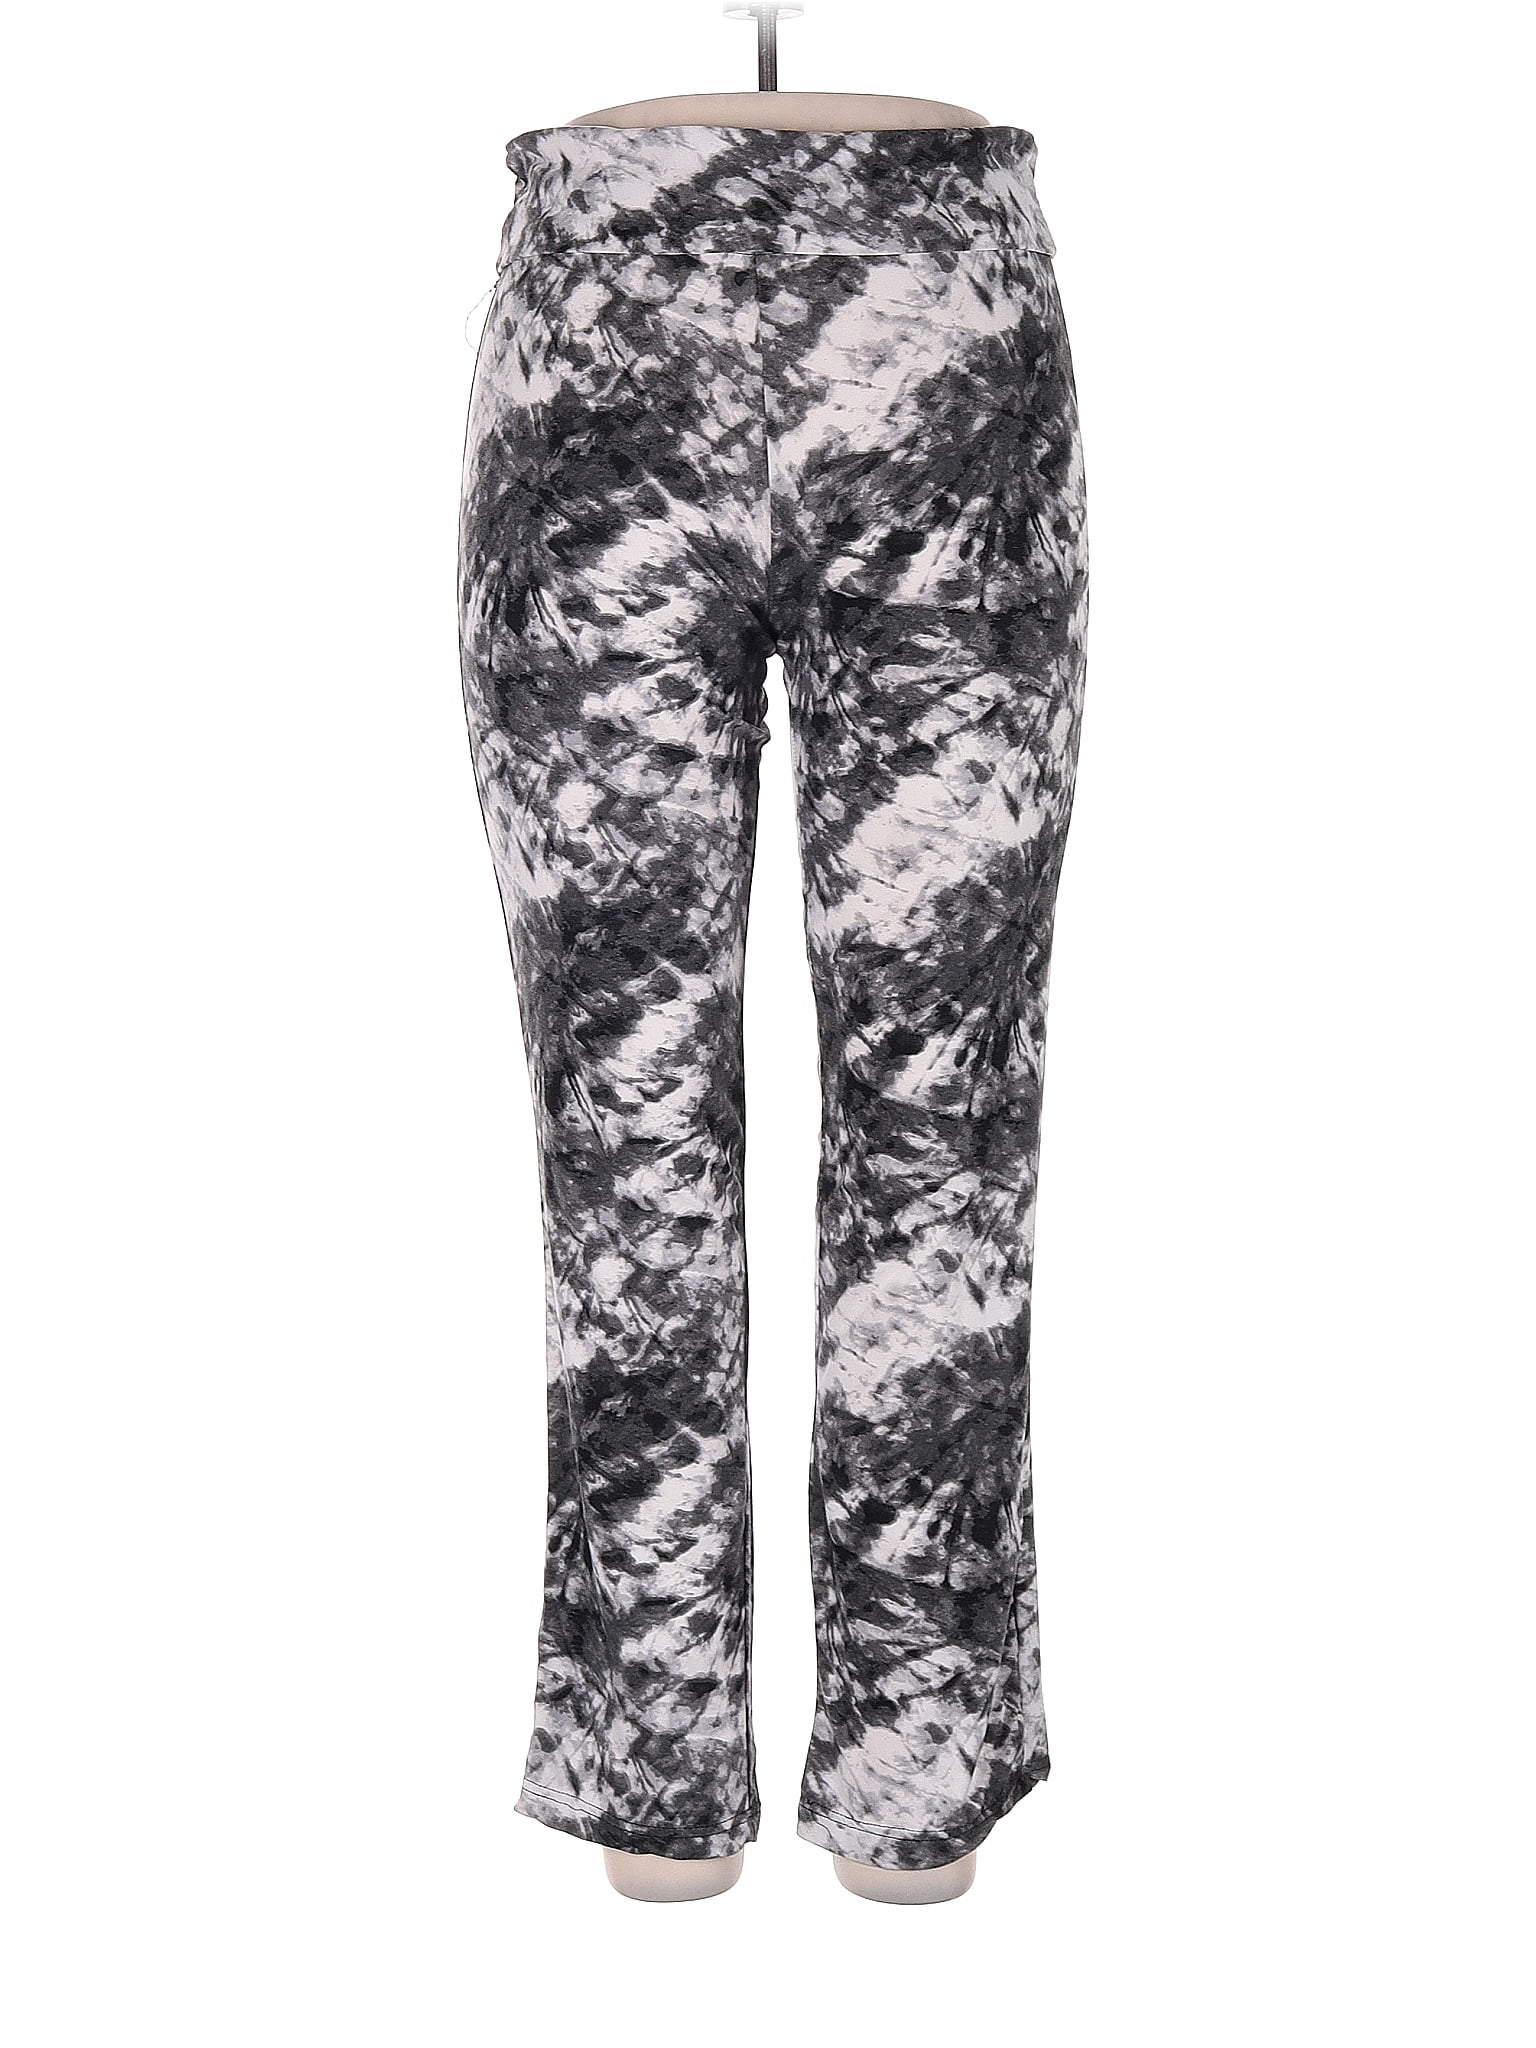 Bobbie Brooks Multi Color Black Casual Pants Size XL - 64% off